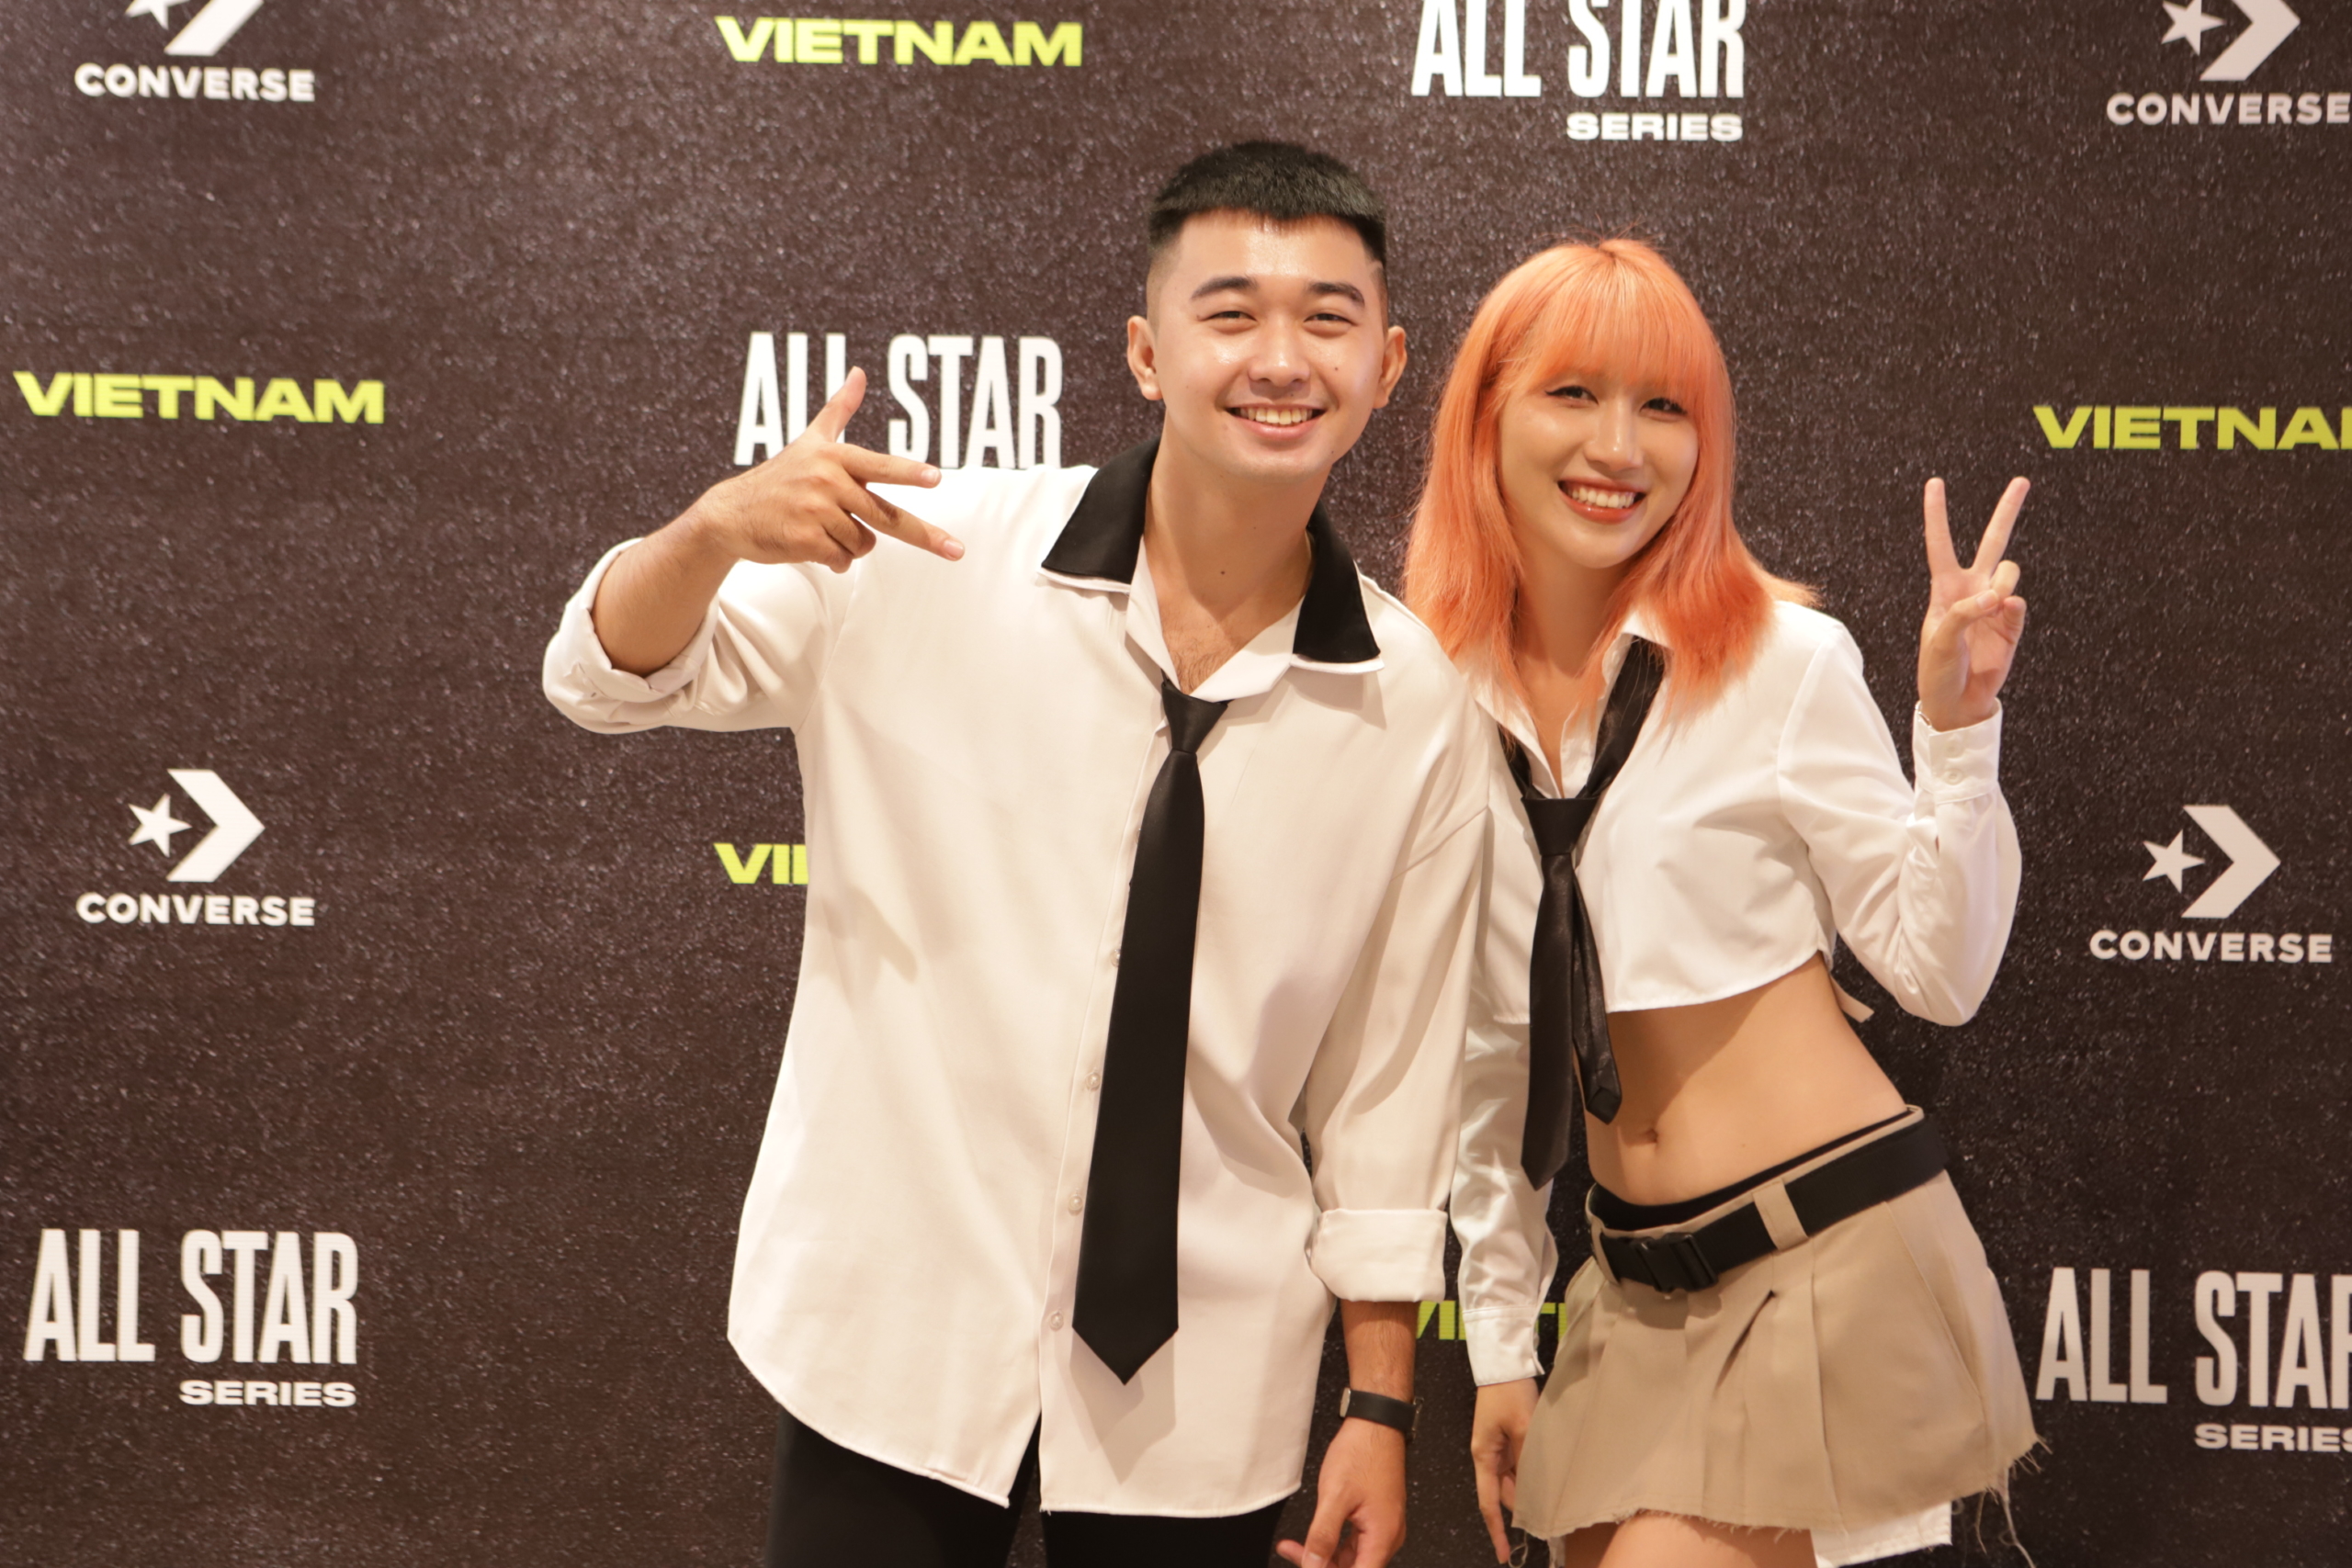 Converse All Star tôn vinh các nhà sáng tạo trẻ của Việt Nam trong hoạt động CREATE NEXT